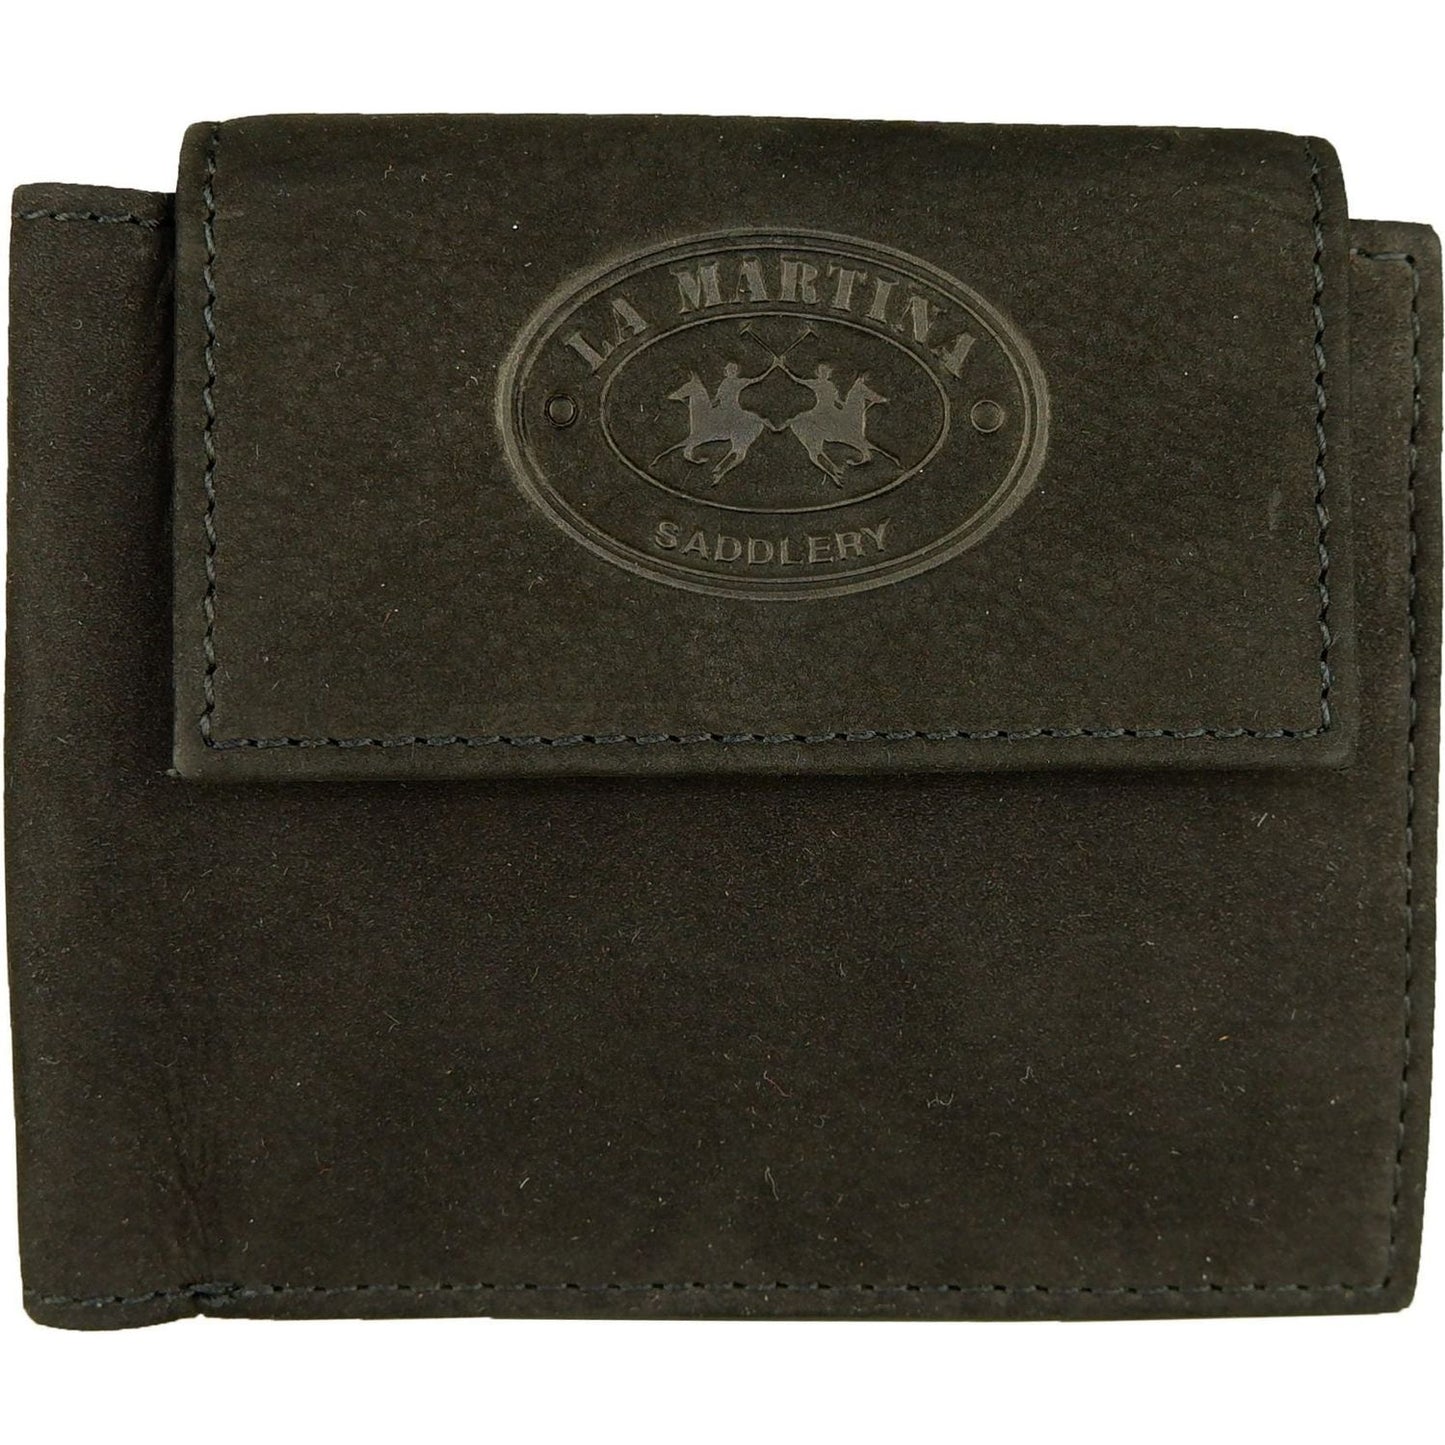 La Martina Elegant Black Leather Wallet for Men black-leather-wallet product-6701-404309139-scaled-0b6dc29b-ce8.jpg